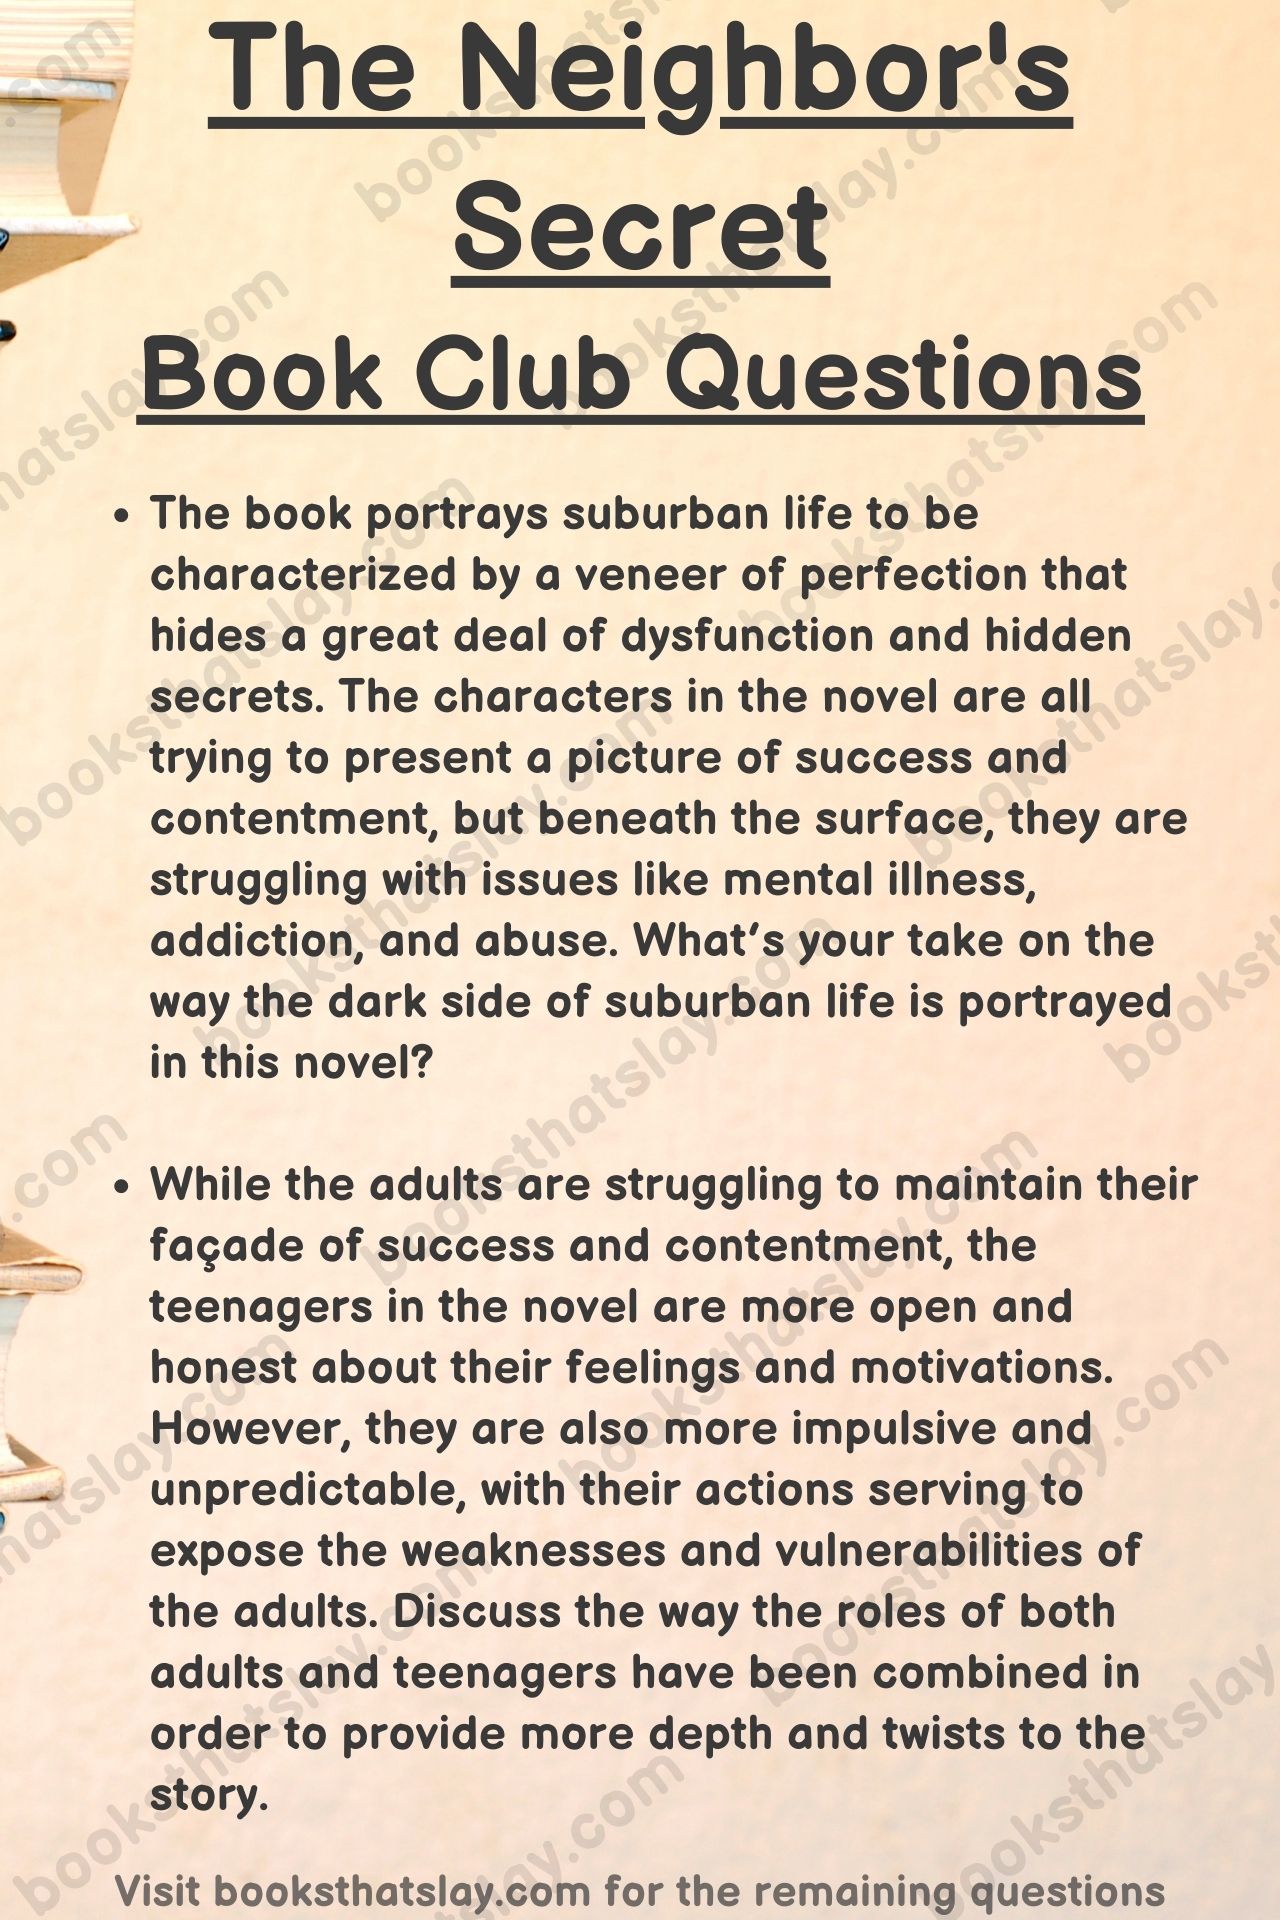 The Neighbor's Secret Book Club Questions
